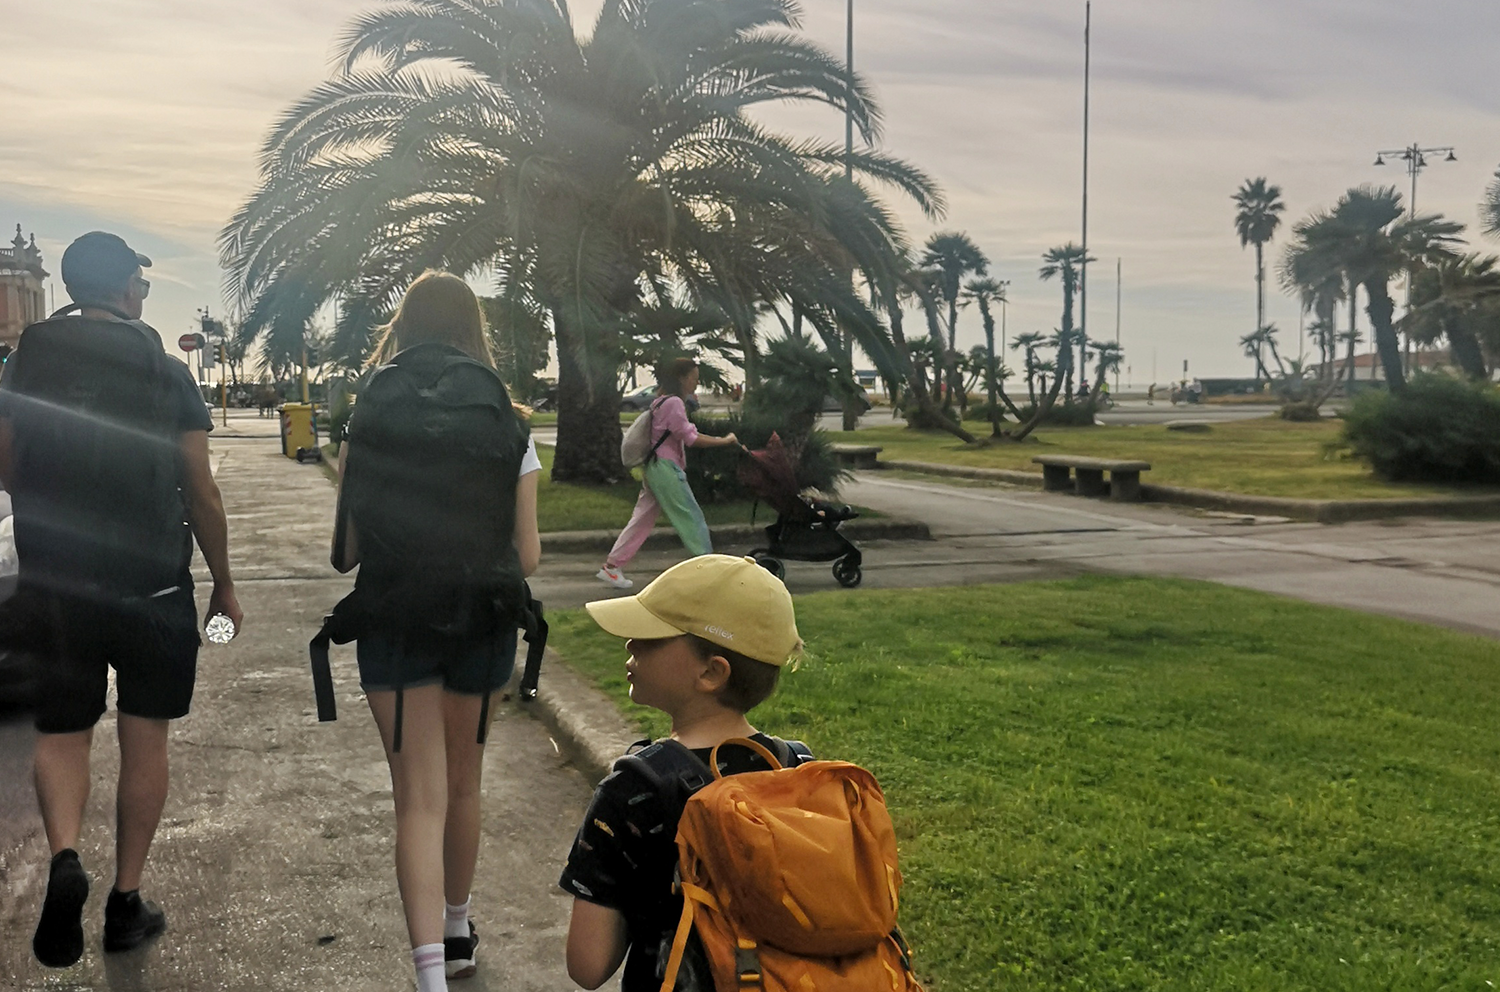 Familien på vandring blandt palmer og solskinn.